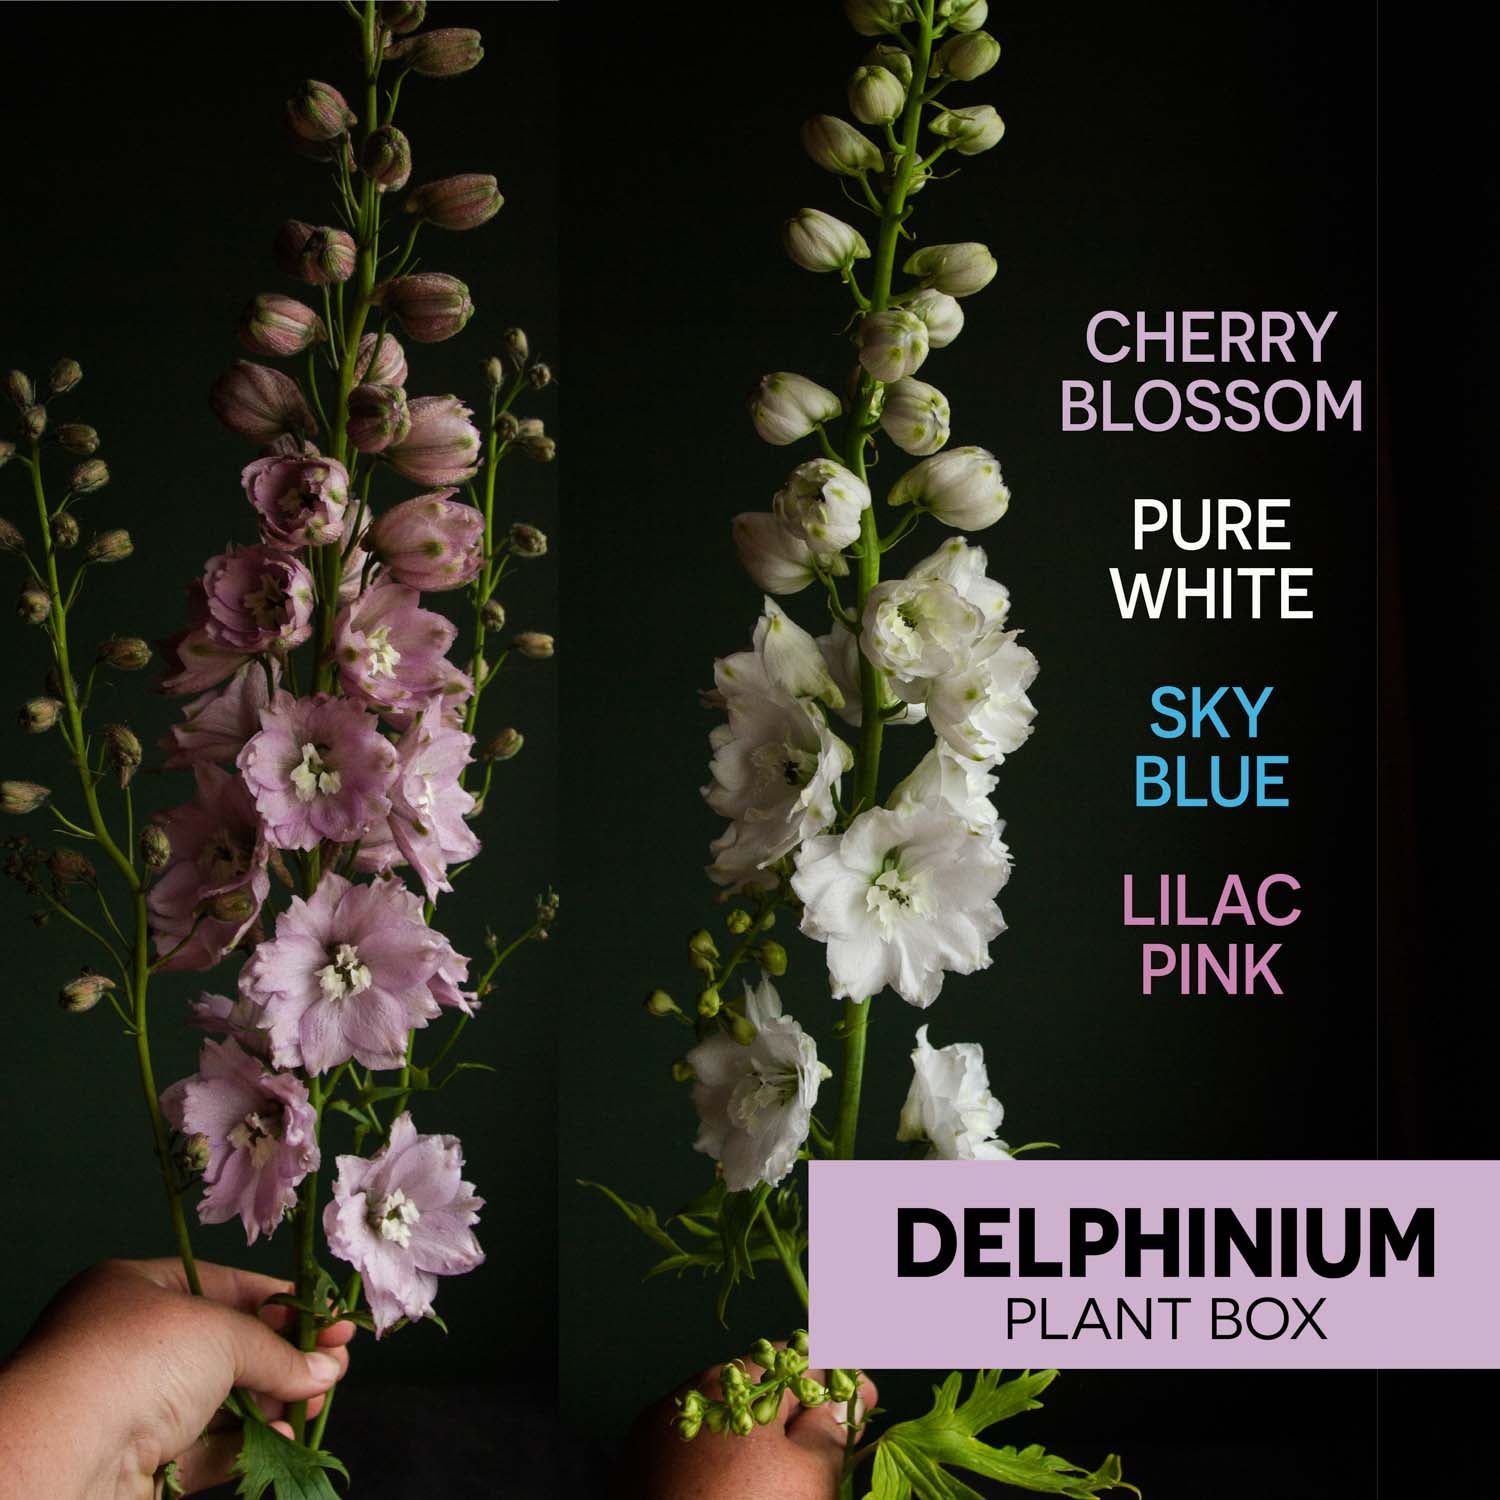 DELPHINIUM - 10 PLANT Box Special